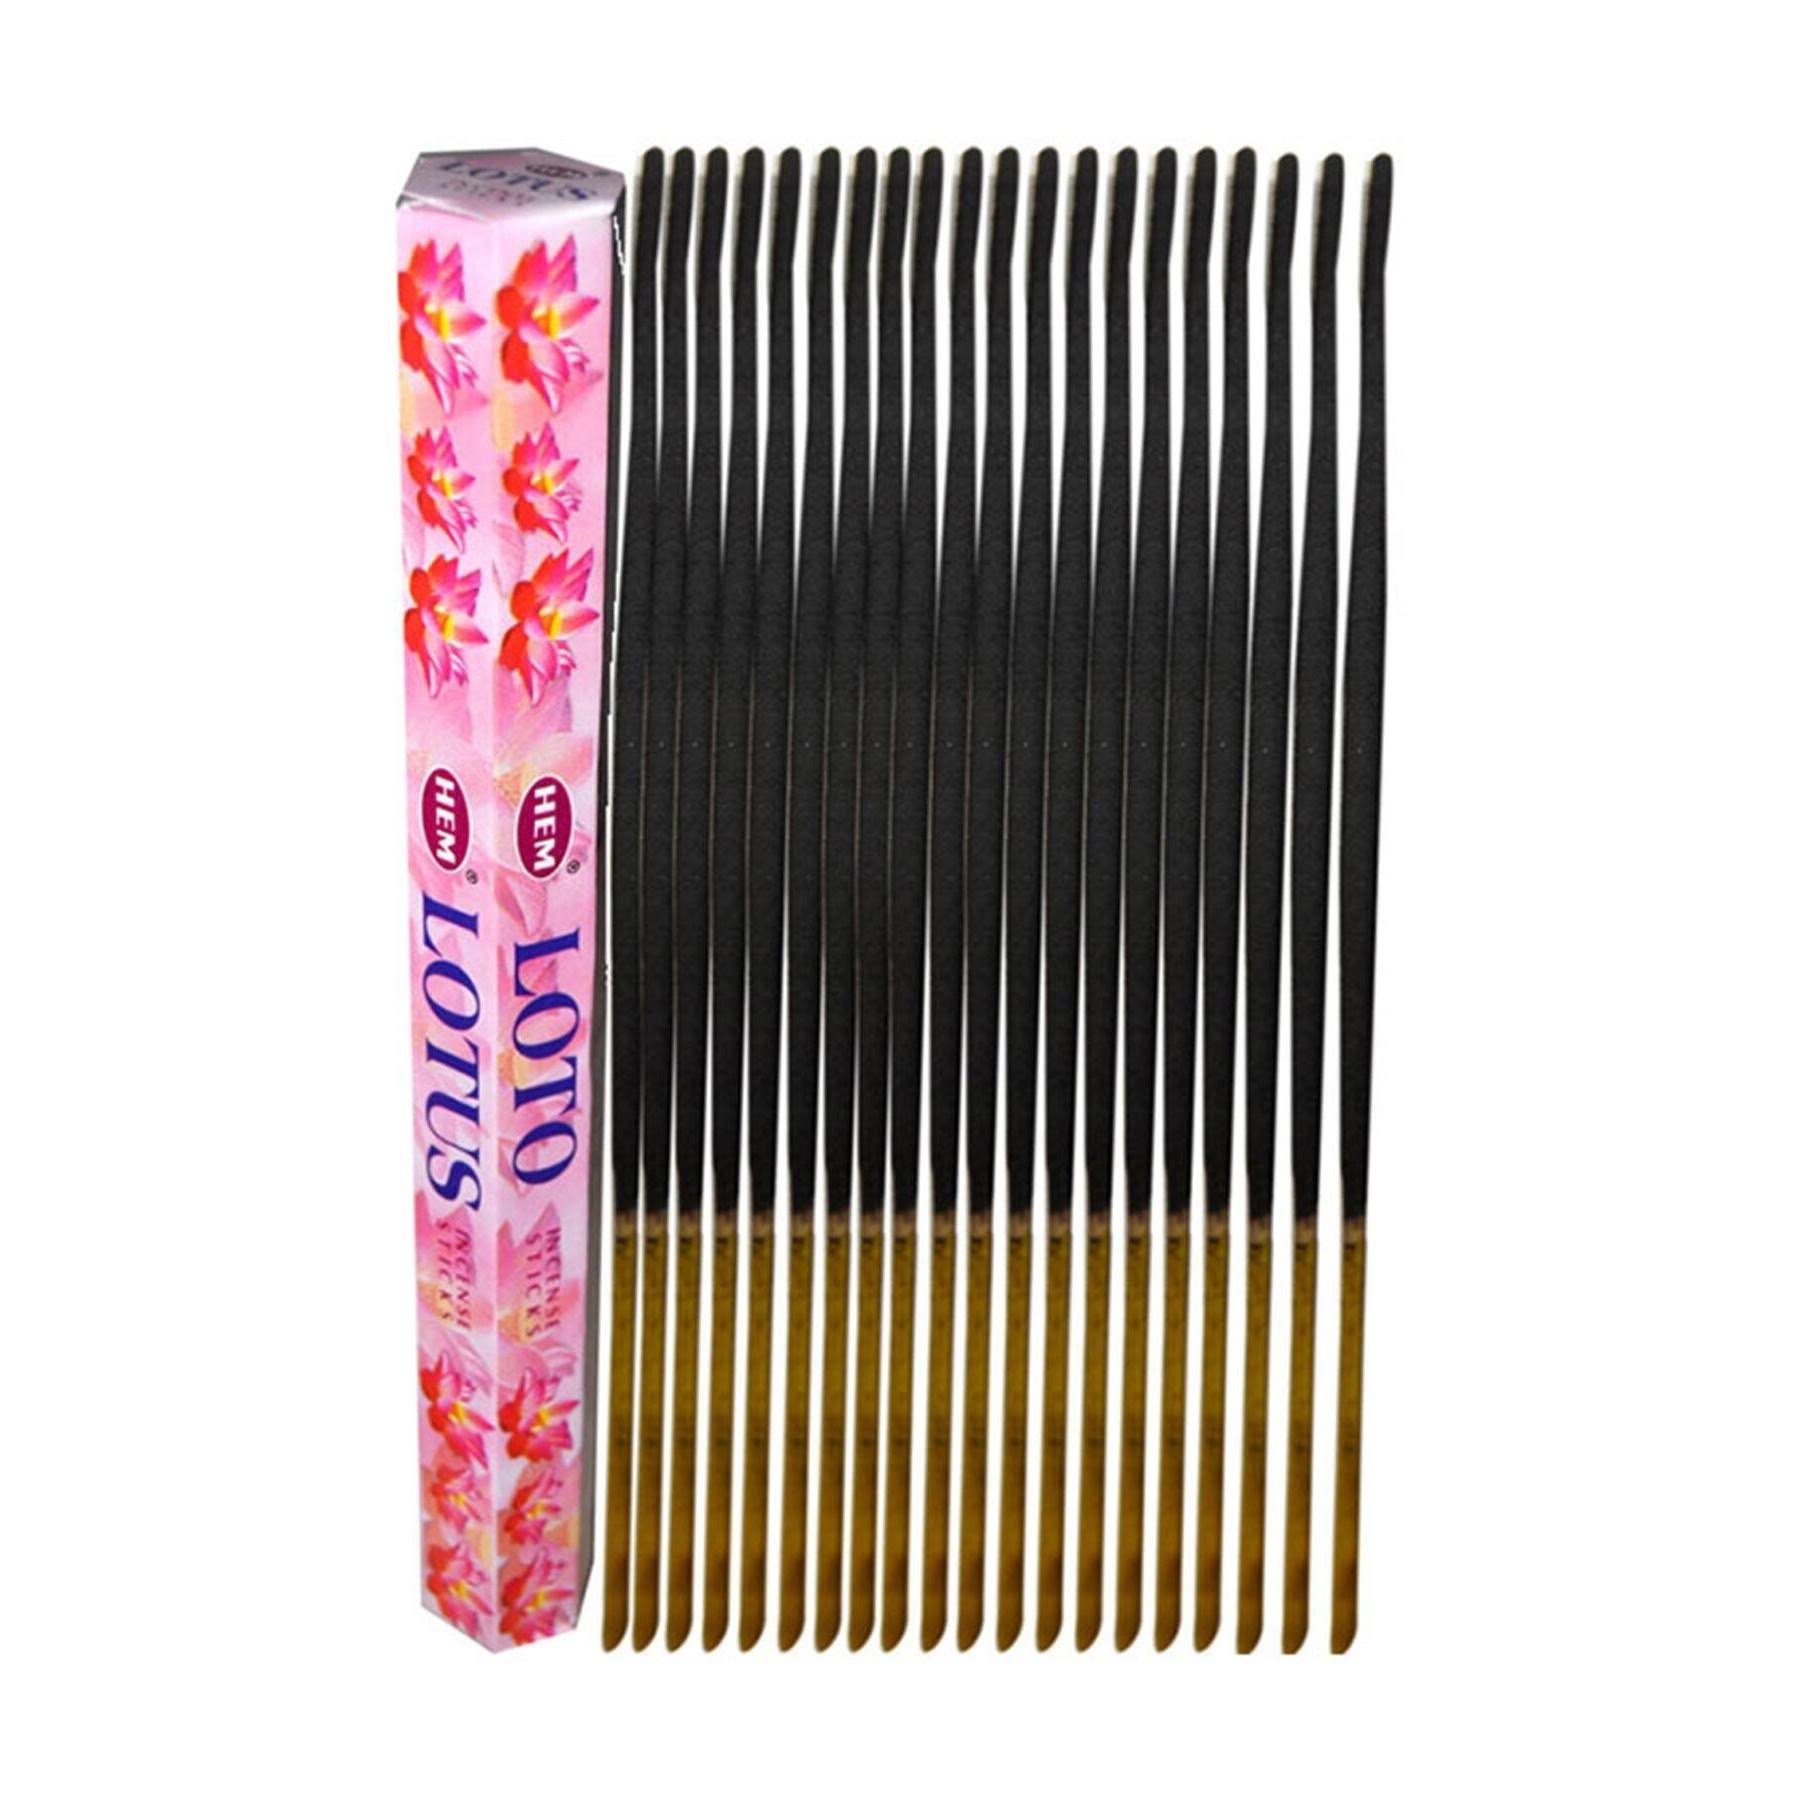 Hem Incense Sticks - Lotus, 20ct